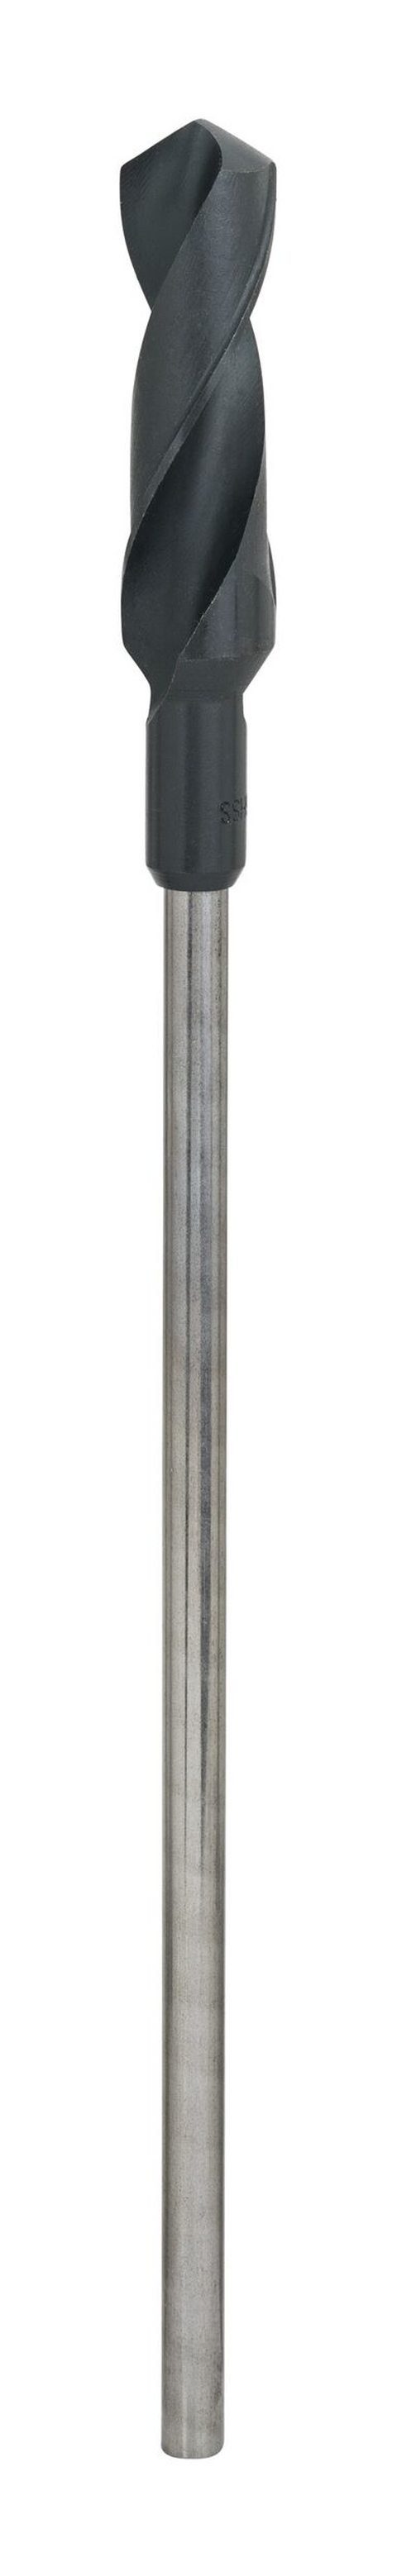 BOSCH Holzbohrer, Schalungs- und Installationsbohrer - 26 x 400 x 11 mm